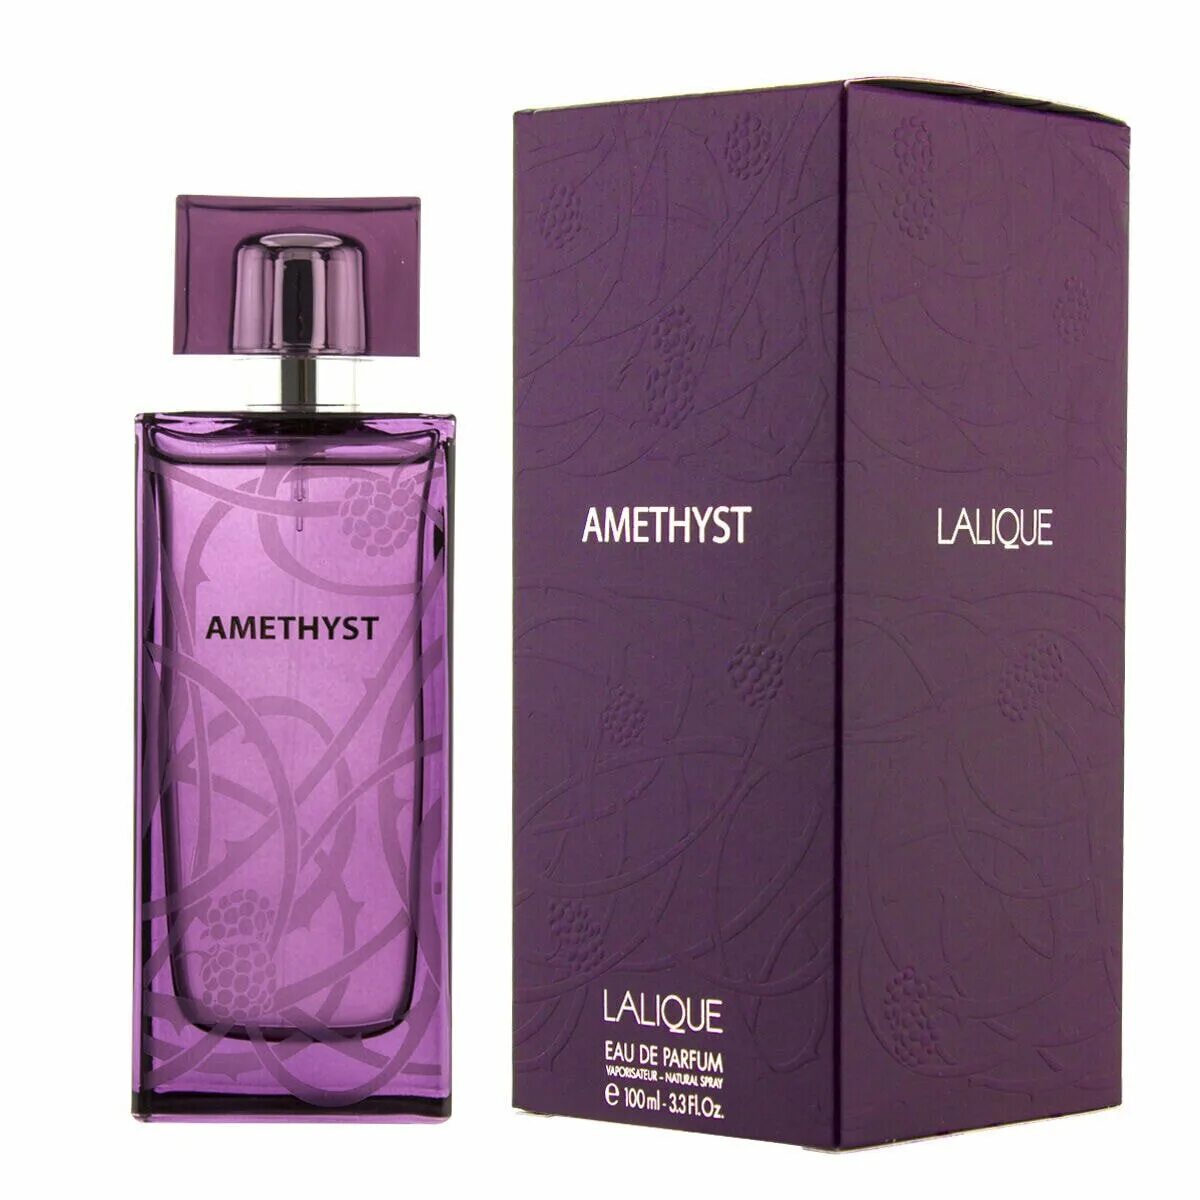 Lalique Amethyst EDP L 100ml. Lalique Amethyst 100ml EDP. Lalique Amethyst EDP, 100 ml (Luxe евро). Lalique Amethyst Eau de Parfum for women 100 ml..